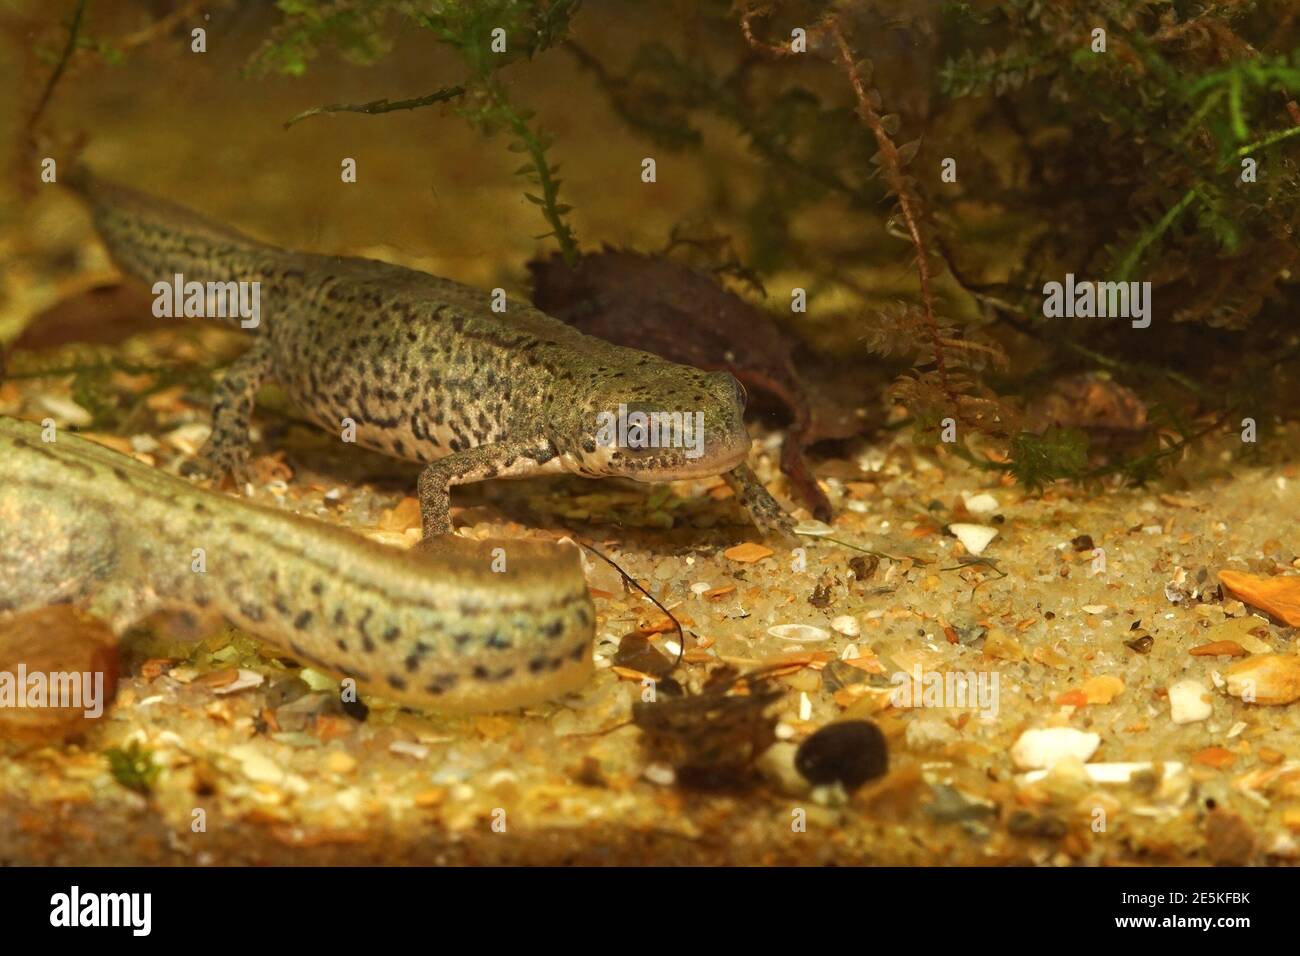 A couple of Italian newt, Lissotriton italicus, in an aquarium Stock Photo